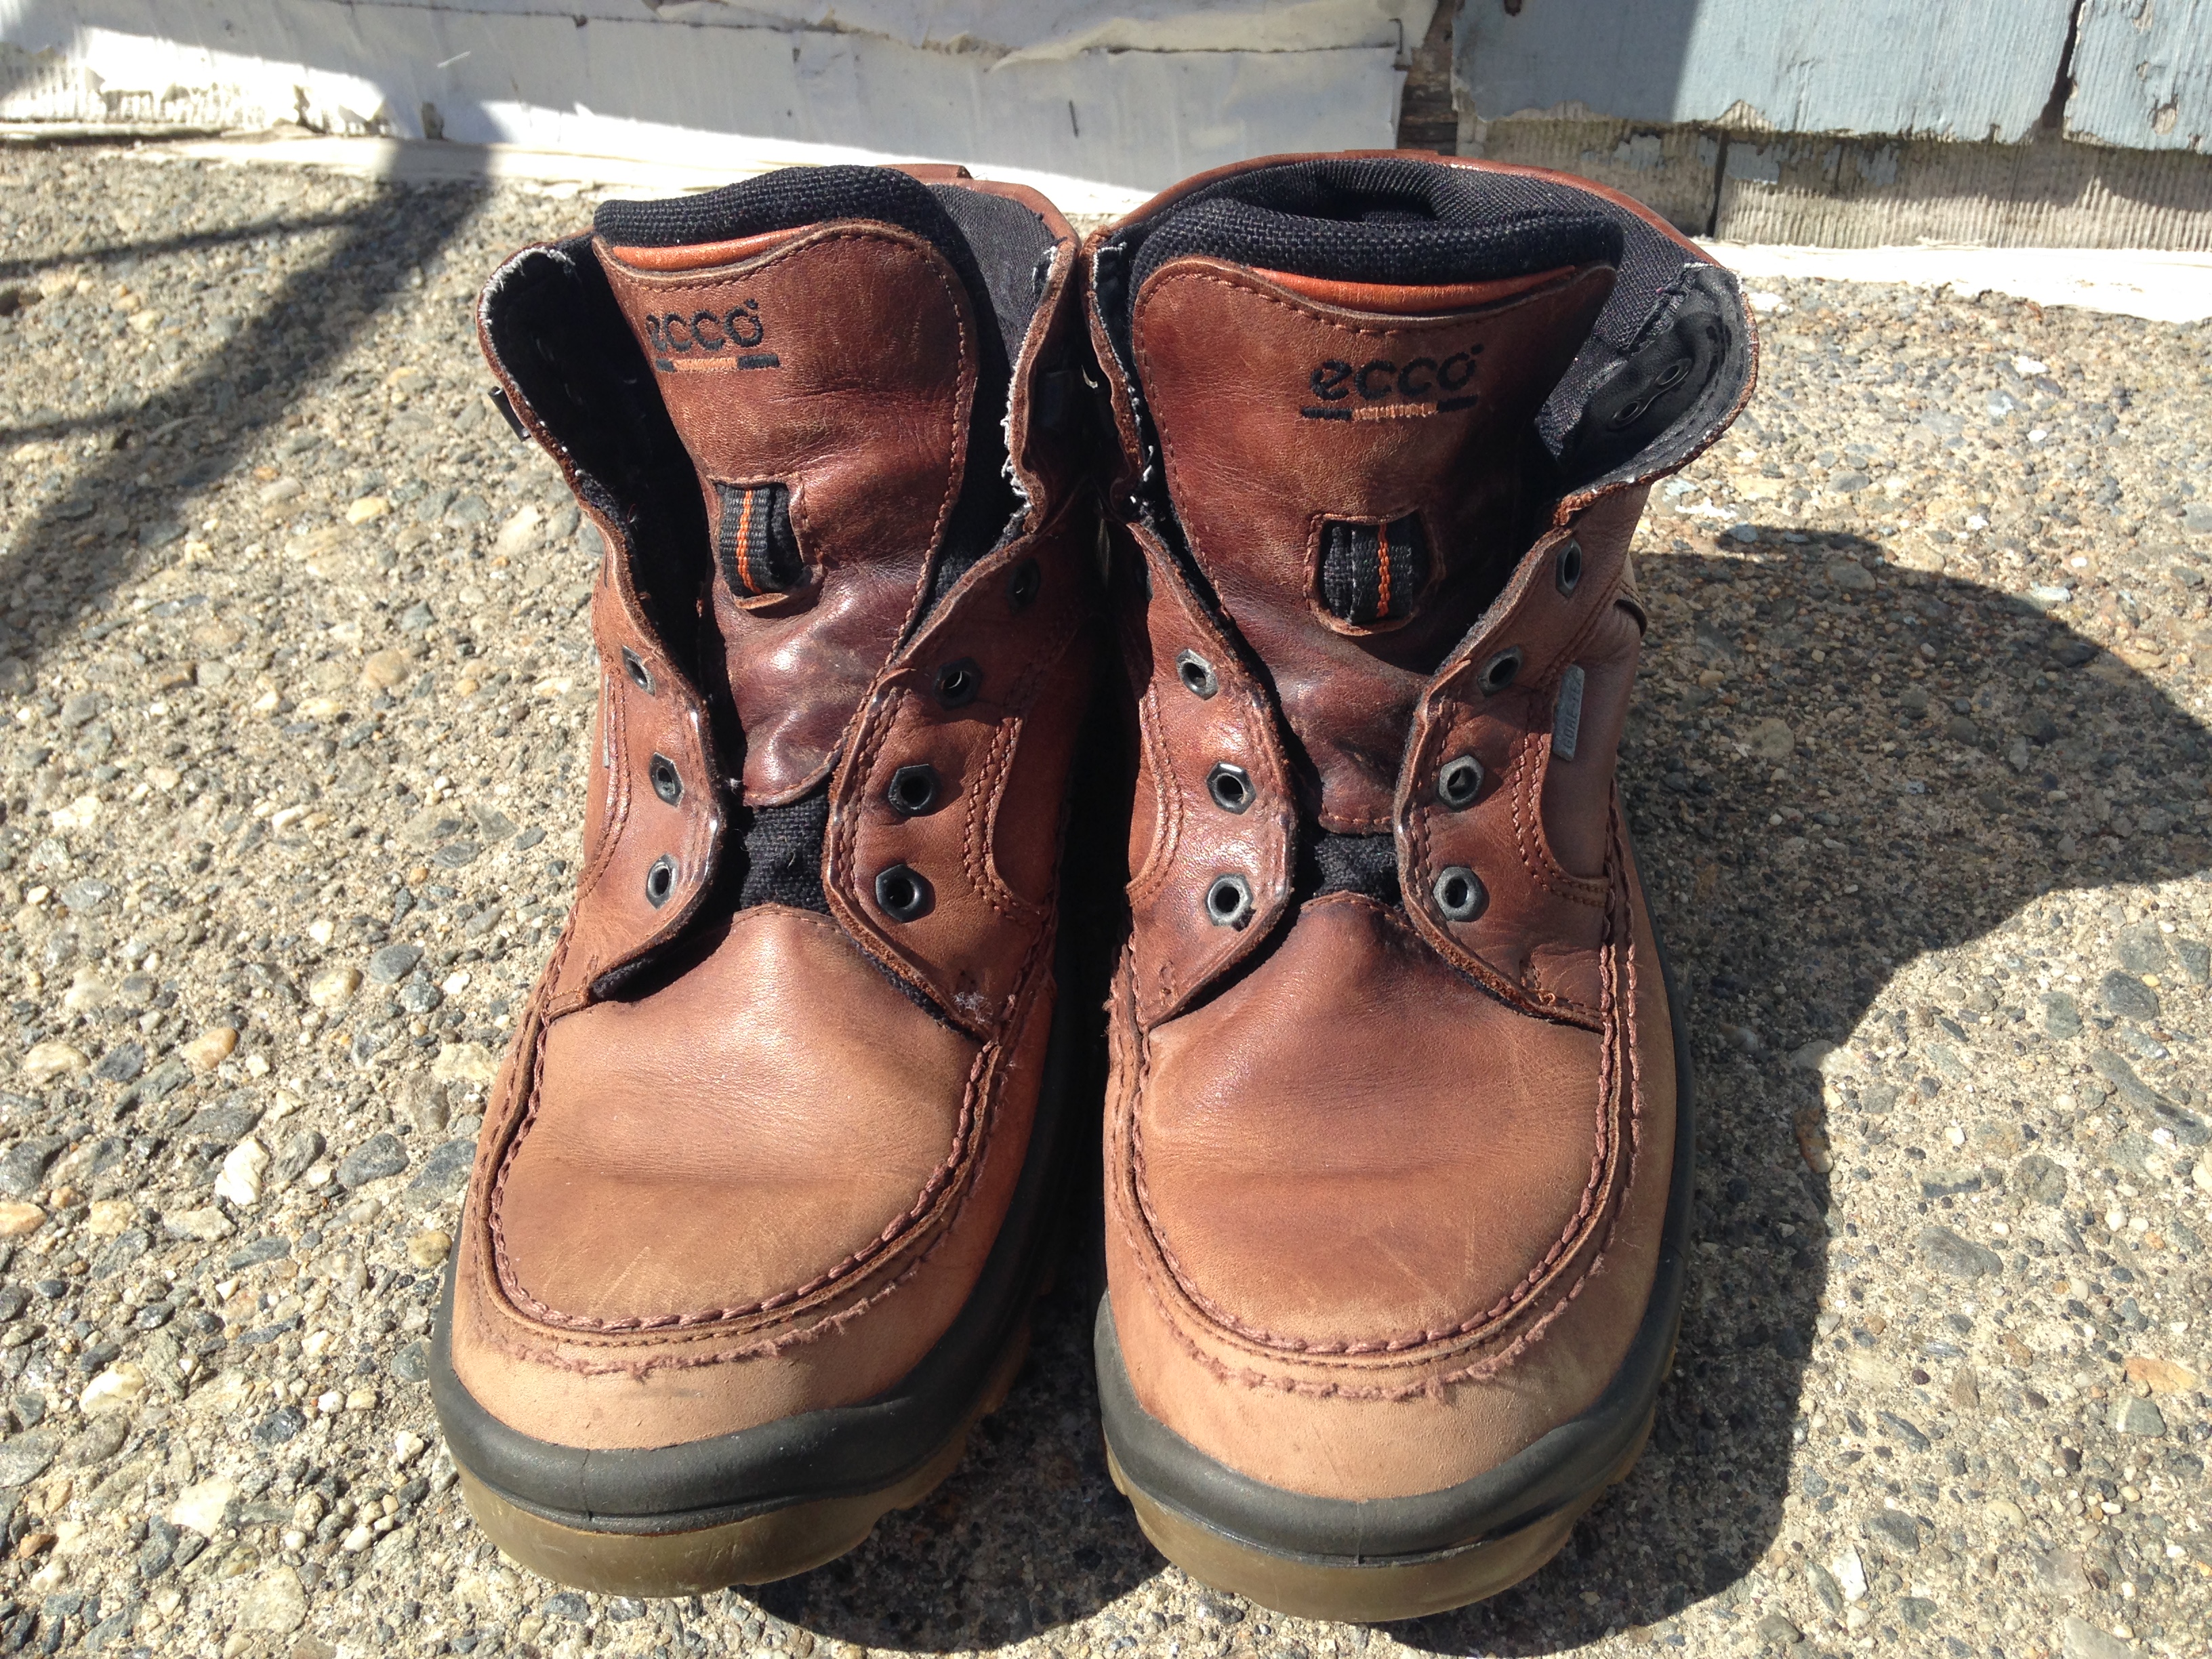 worn boots.JPG